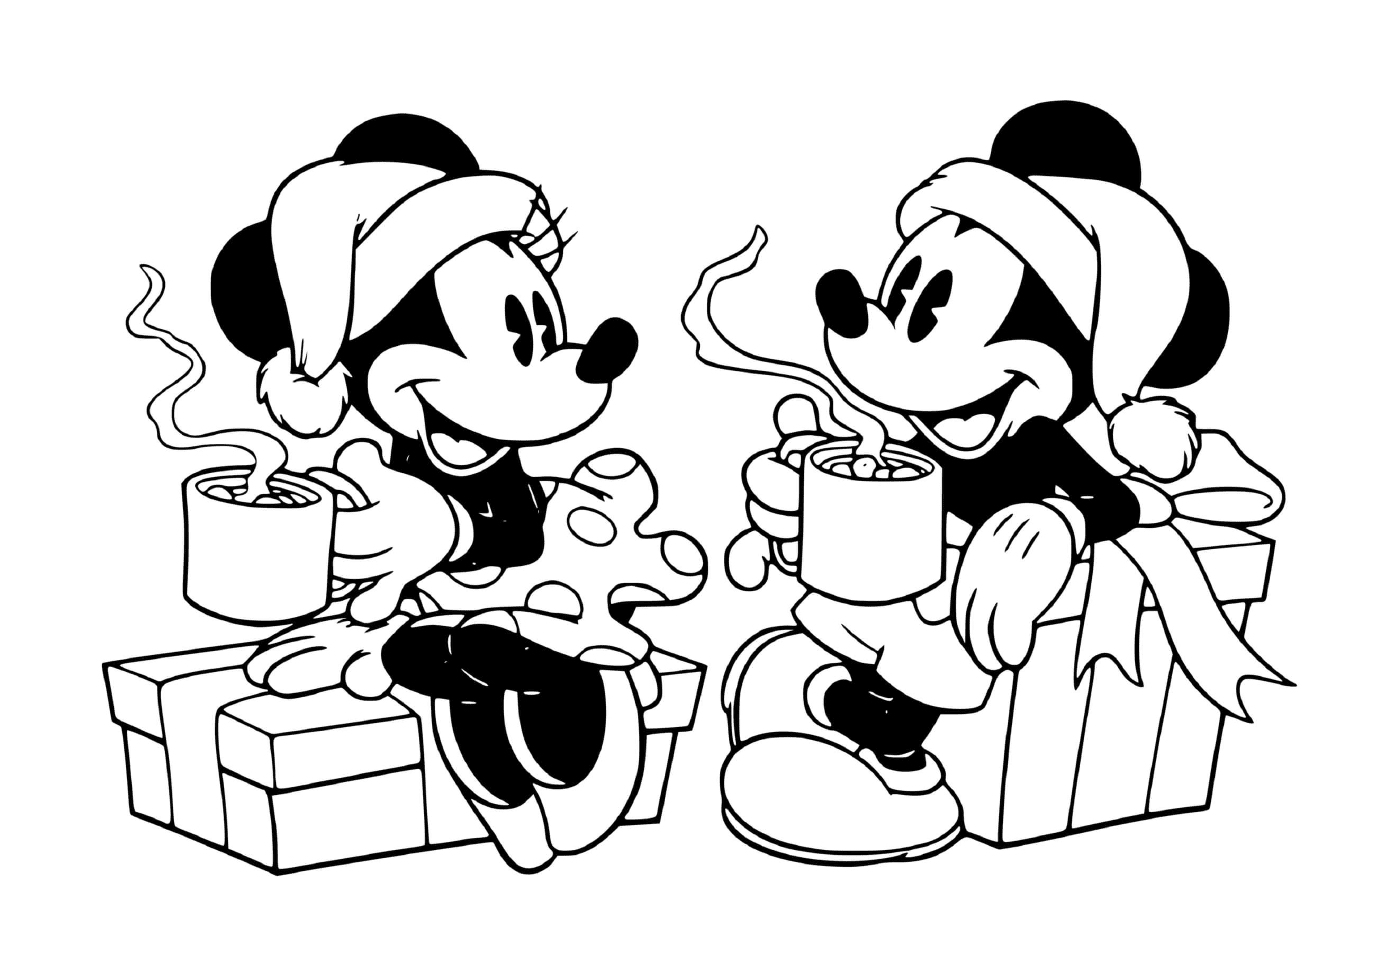  Mickey und Minnie nehmen heiße Schokolade 